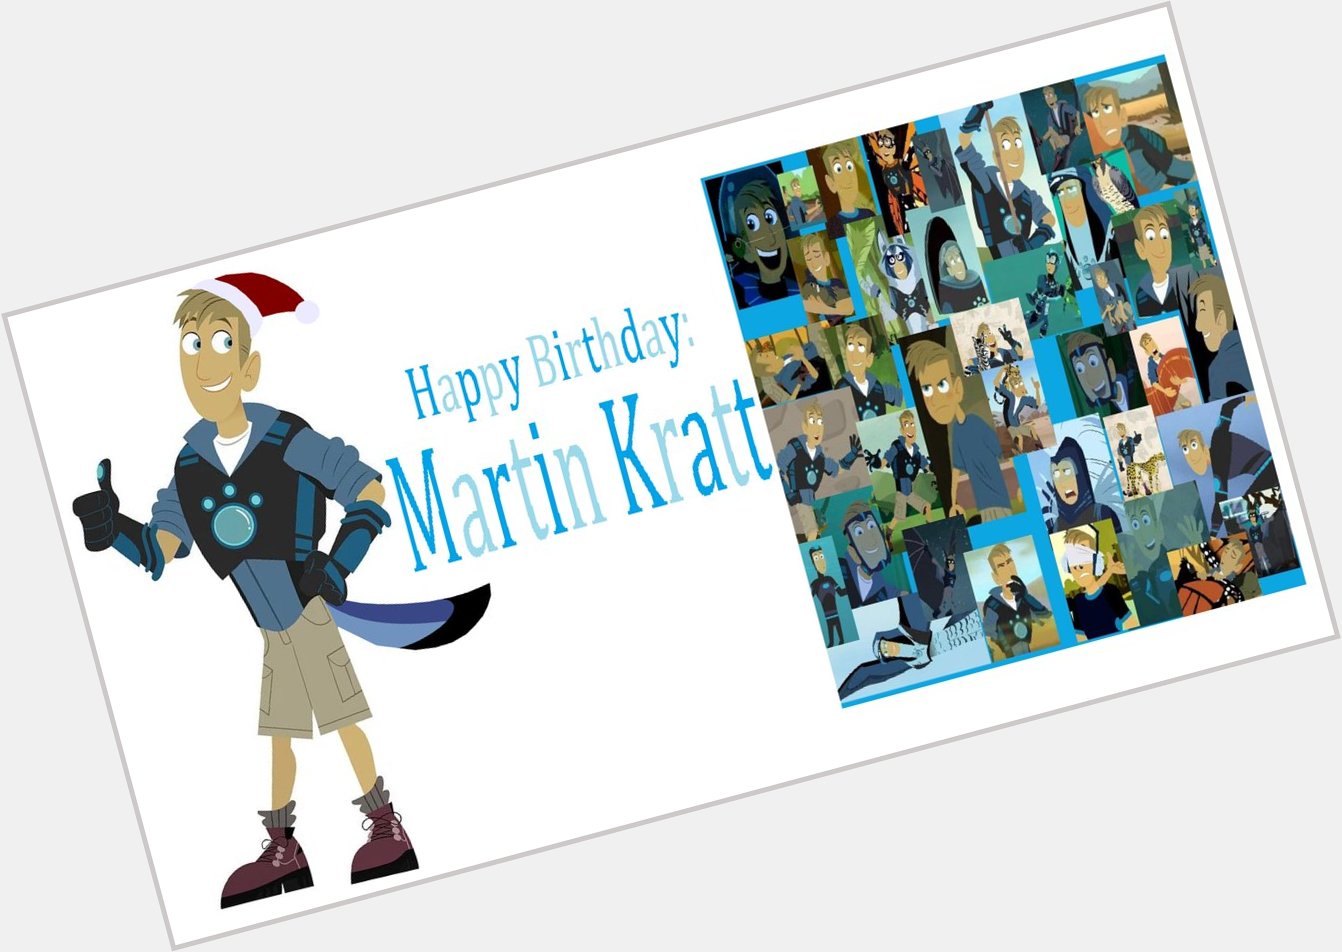 Happy Birthday Martin Kratt by Nora Rosa    